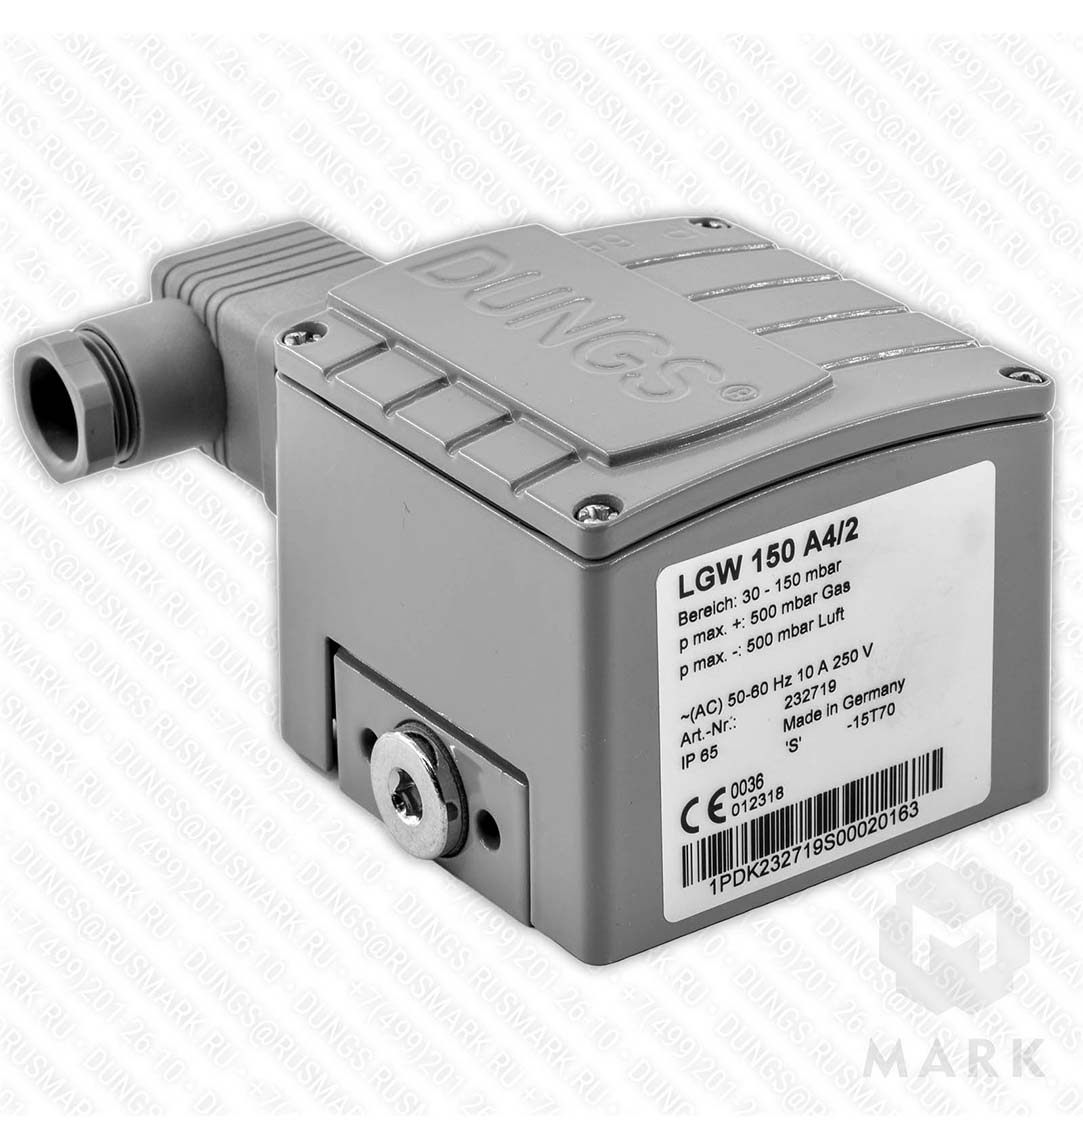 LGW 150 A4/2 Дифференциальный датчик-реле давления газ/воздух DUNGS